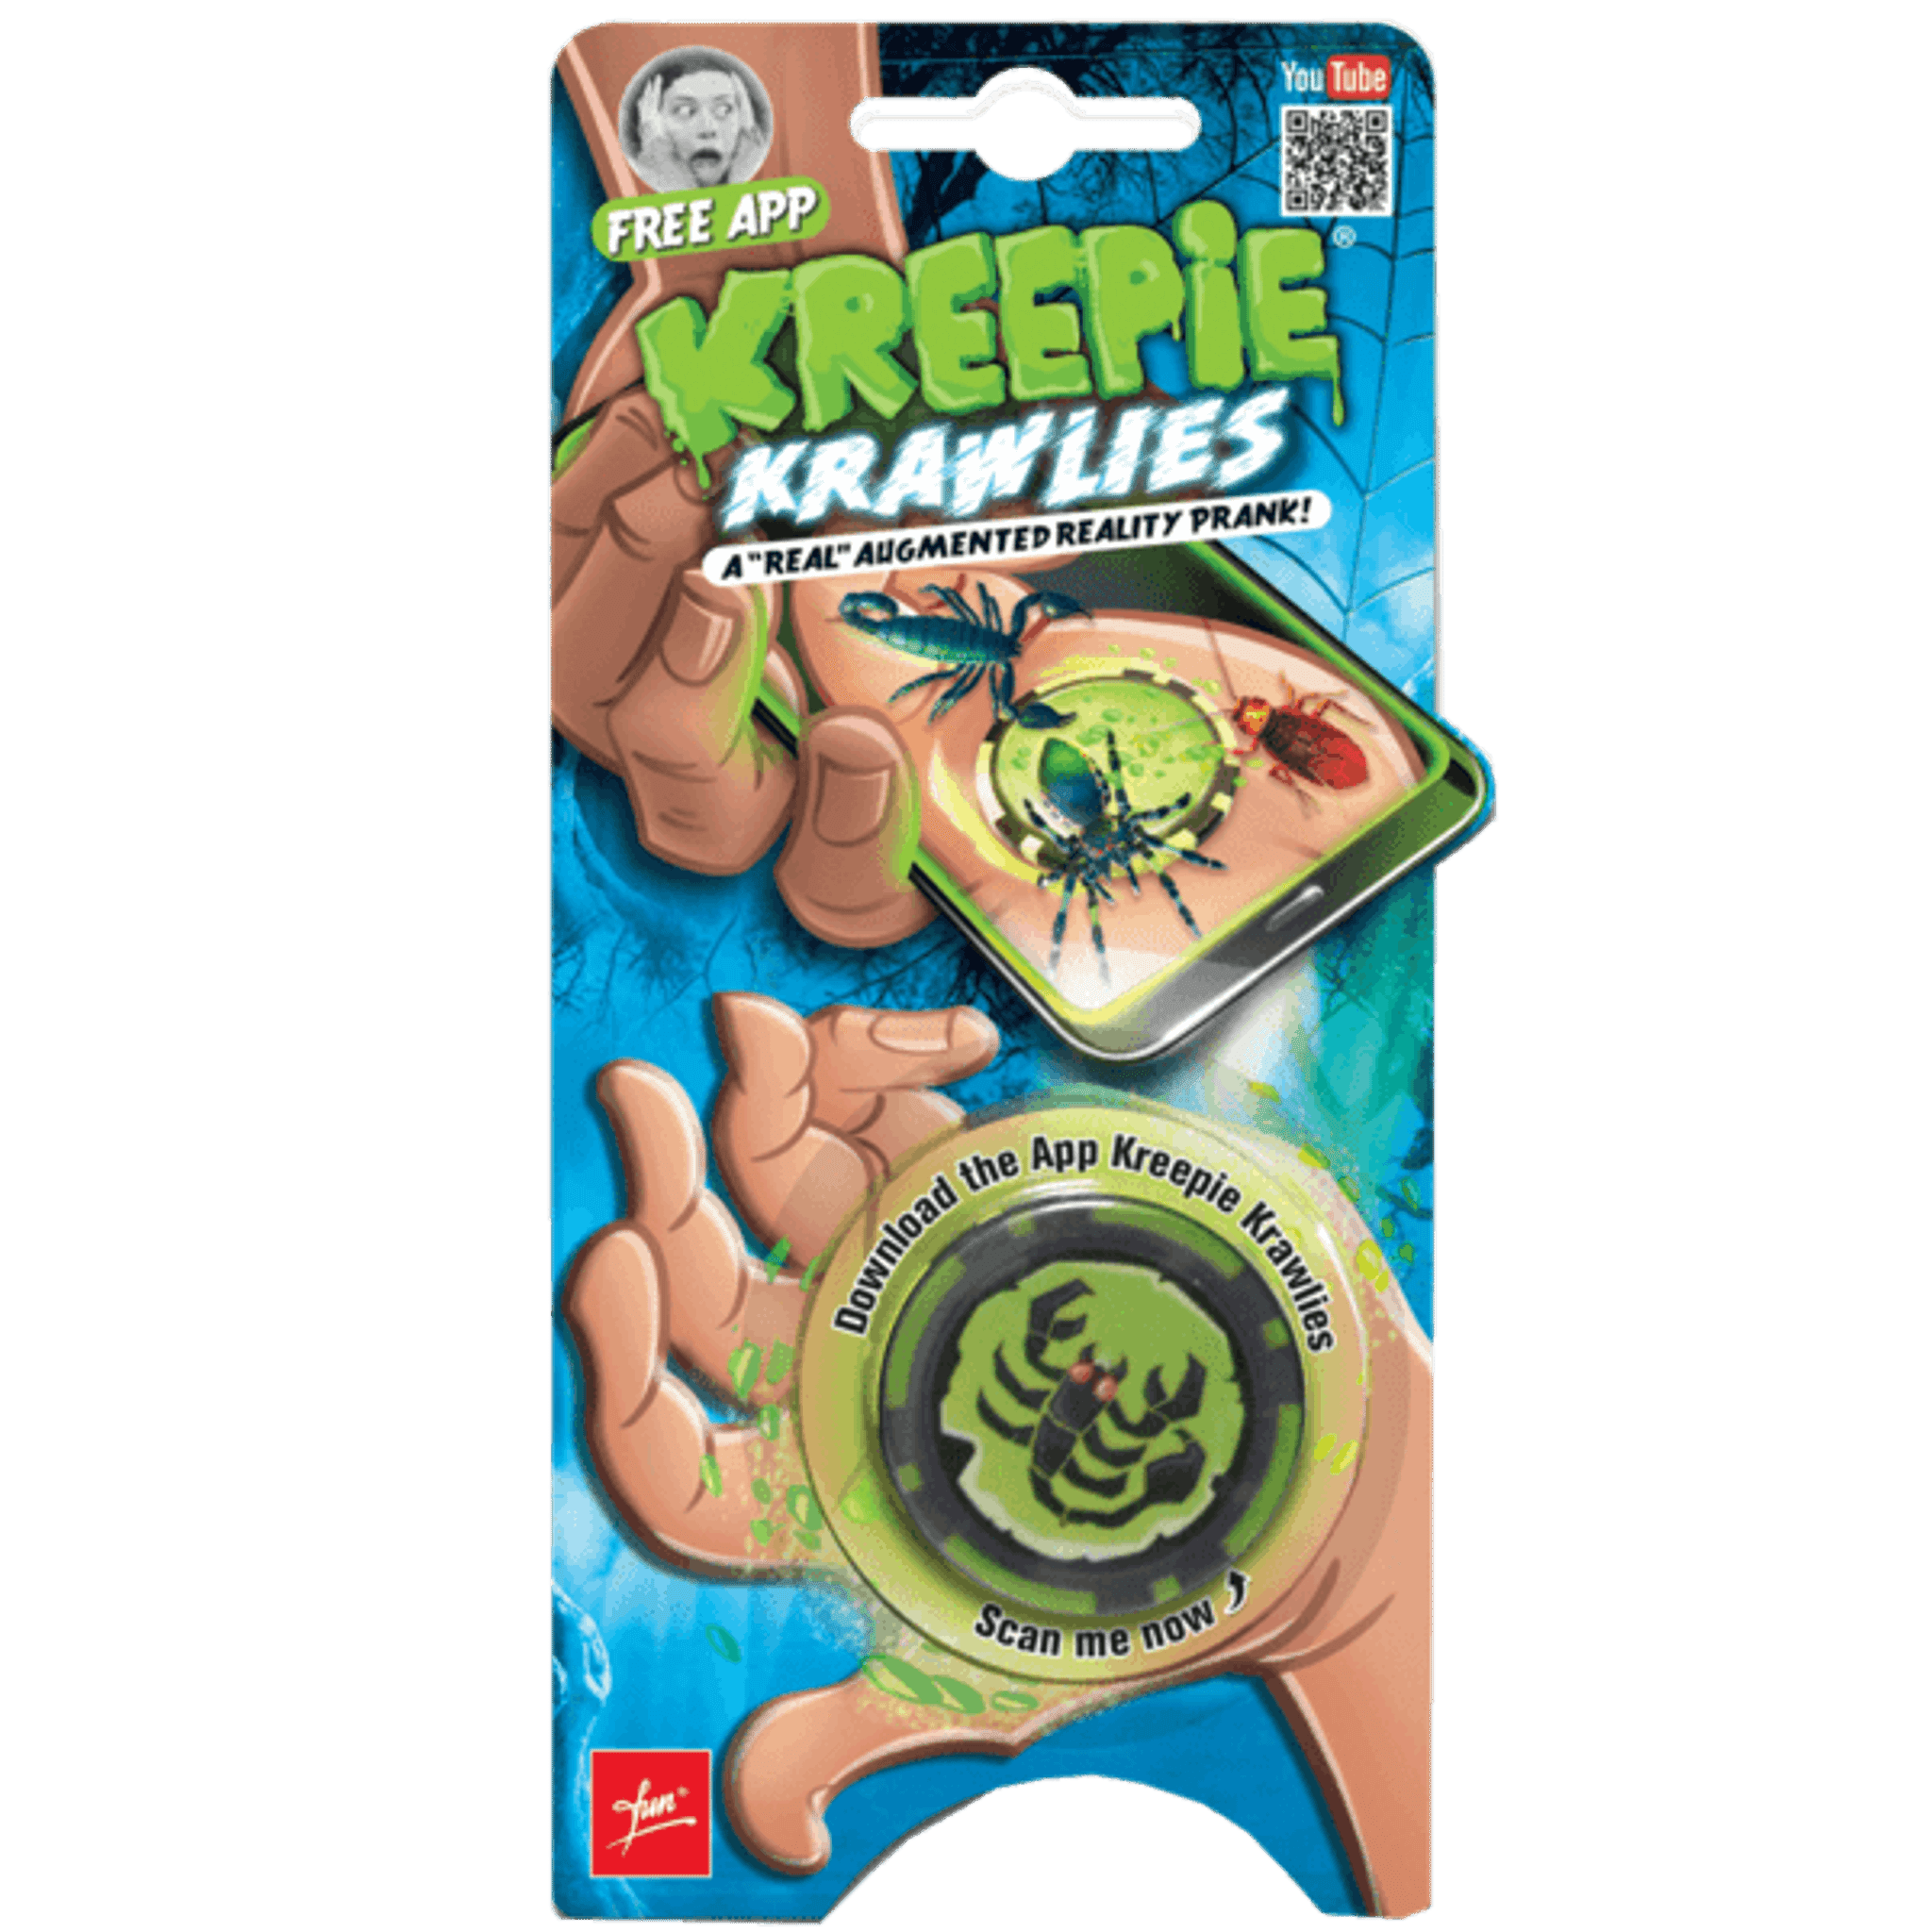 Kreepie Krawlies - Toybox Tales